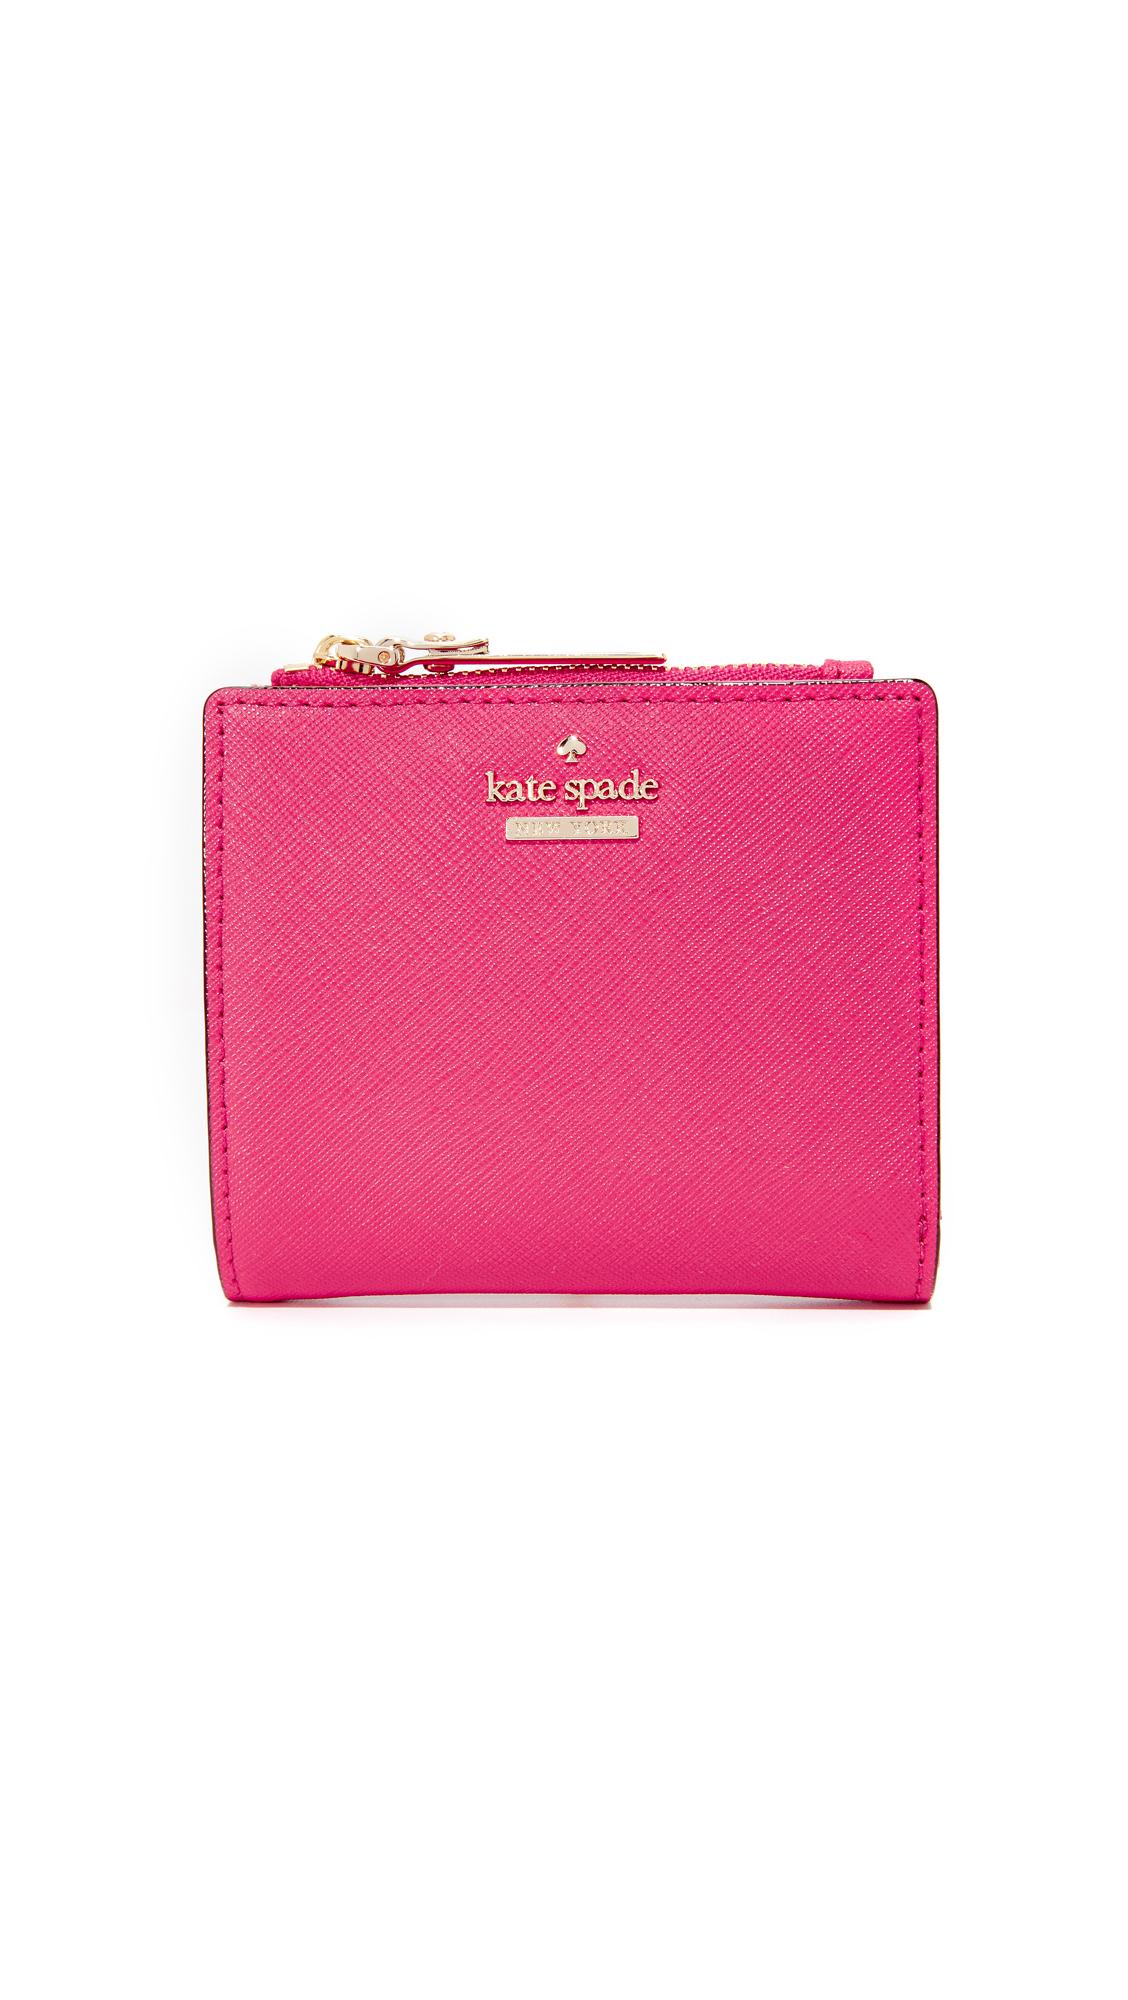 Kate spade new york Adalyn Small Wallet in Pink | Lyst